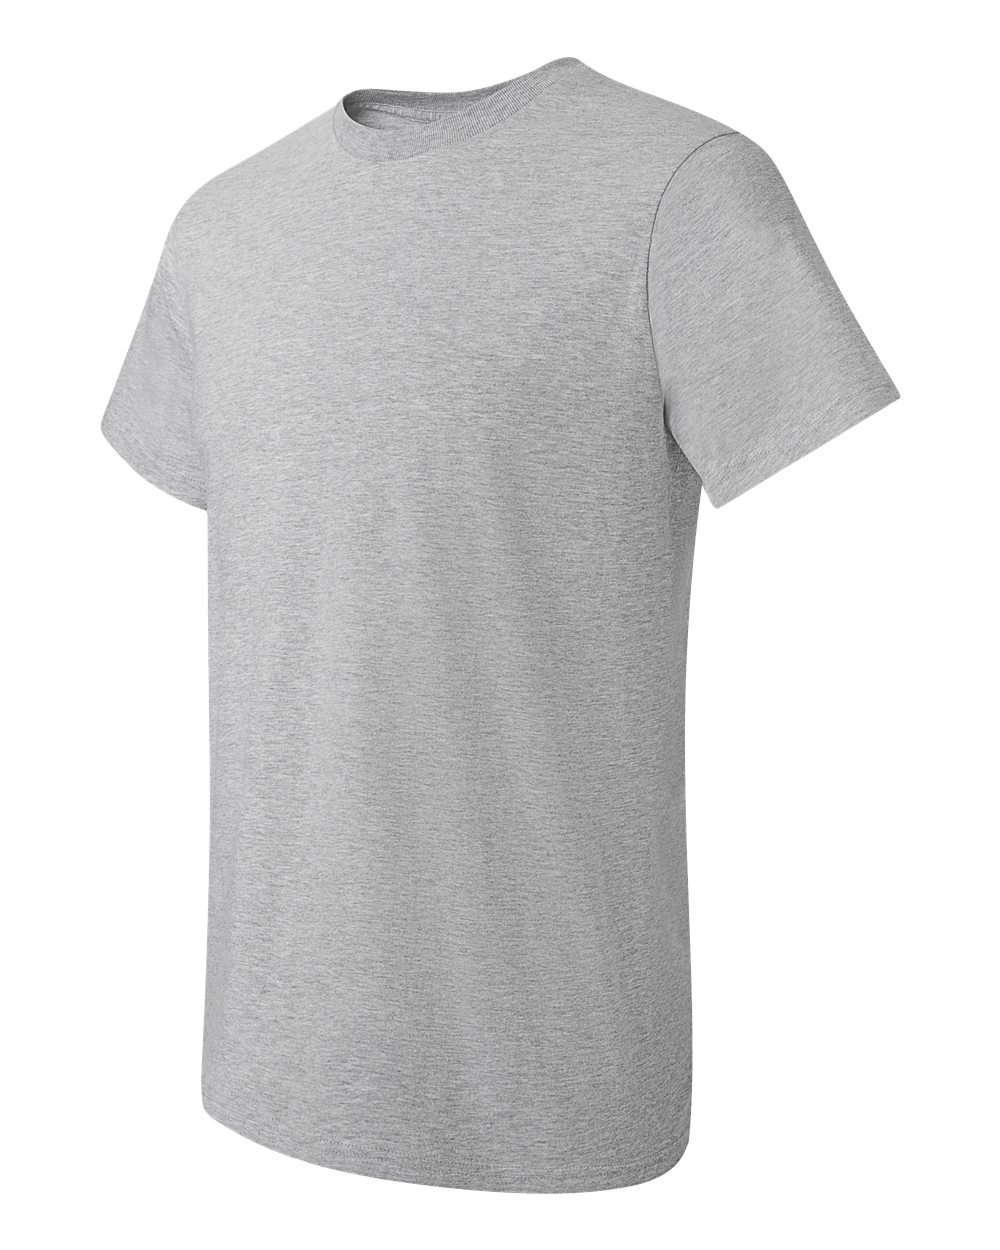 Hanes Nano-T T-Shirt - SHIRT PRINTING 4U